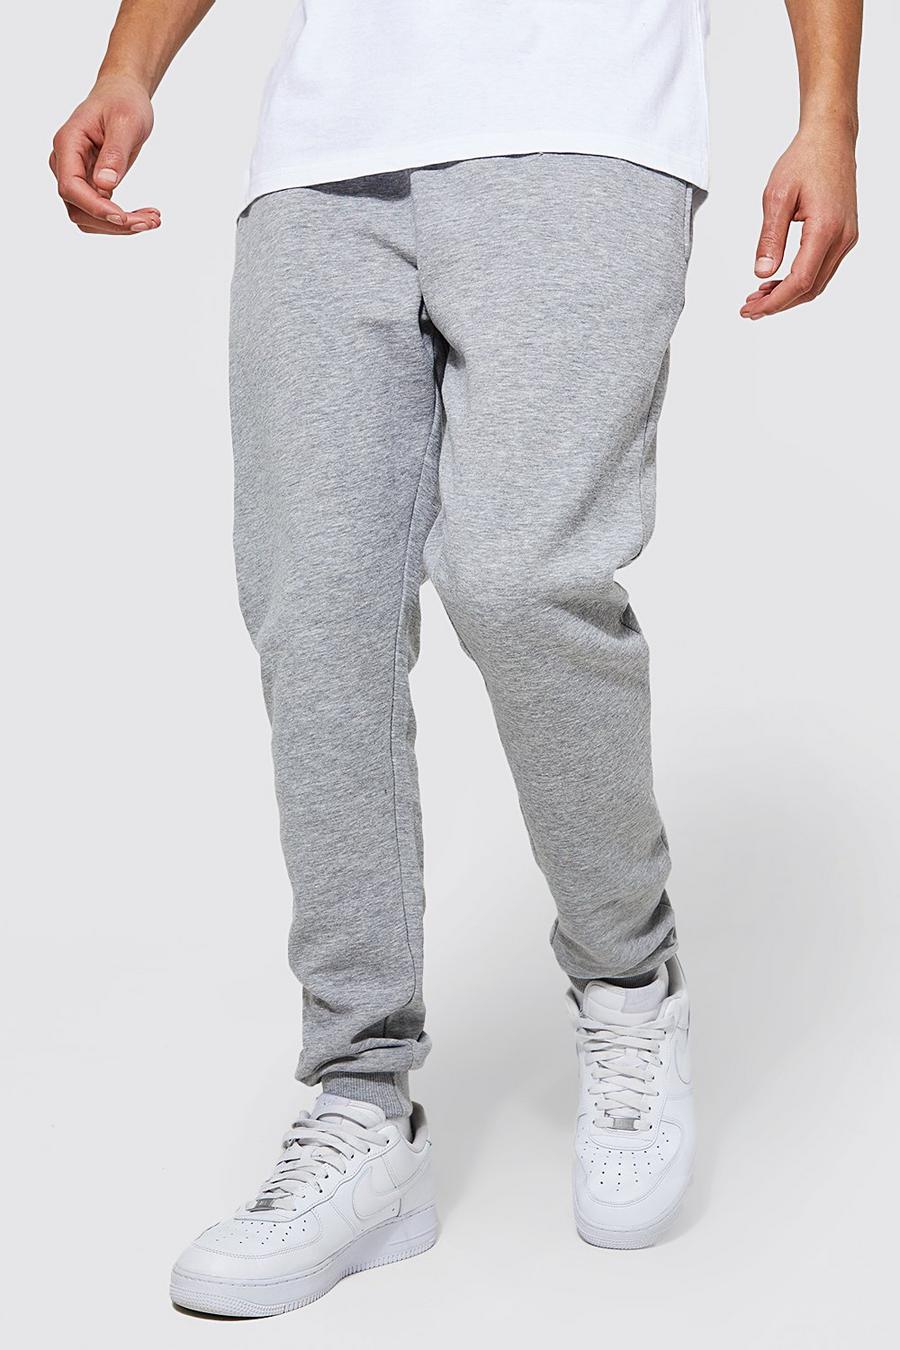 Pantalón deportivo Tall básico pitillo con algodón ecológico, Grey marl gris